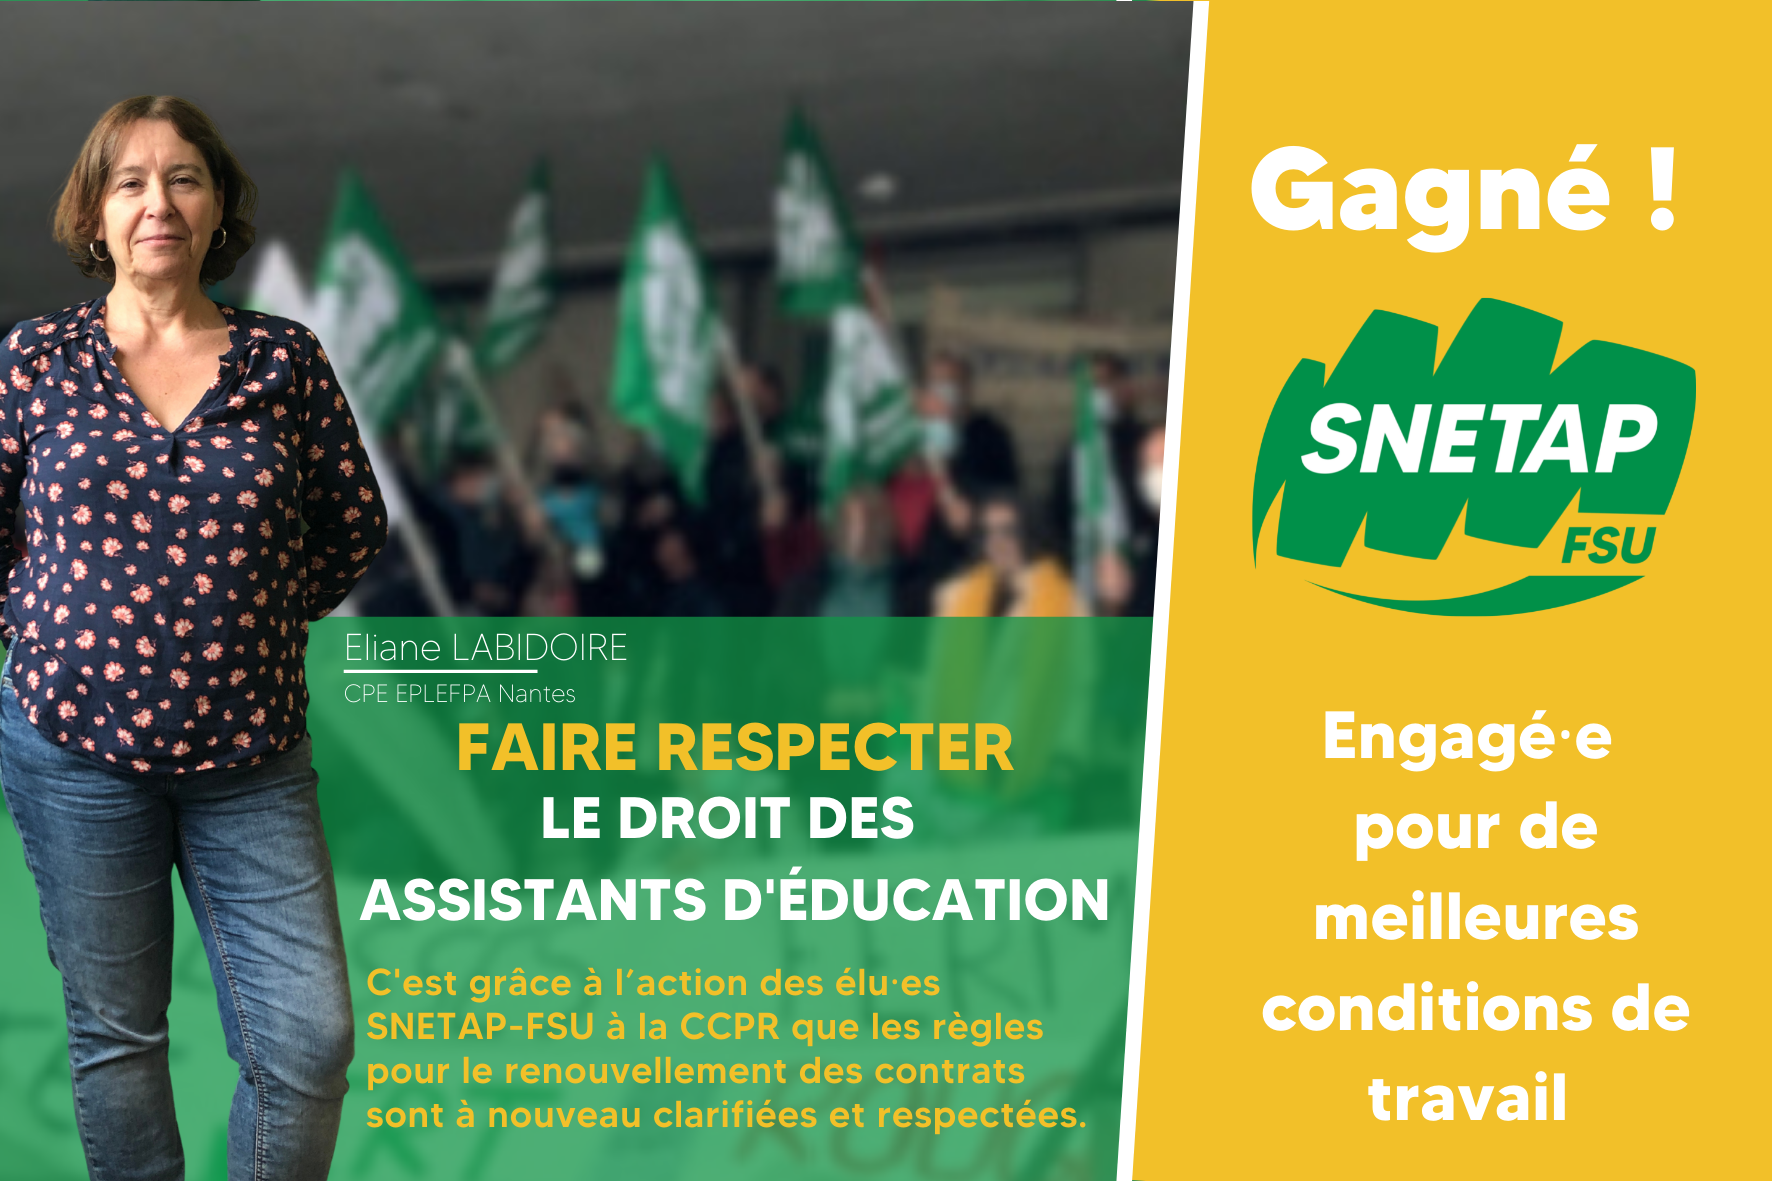 You are currently viewing Gagné ! Faire respecter le droit des assistants d’éducation !